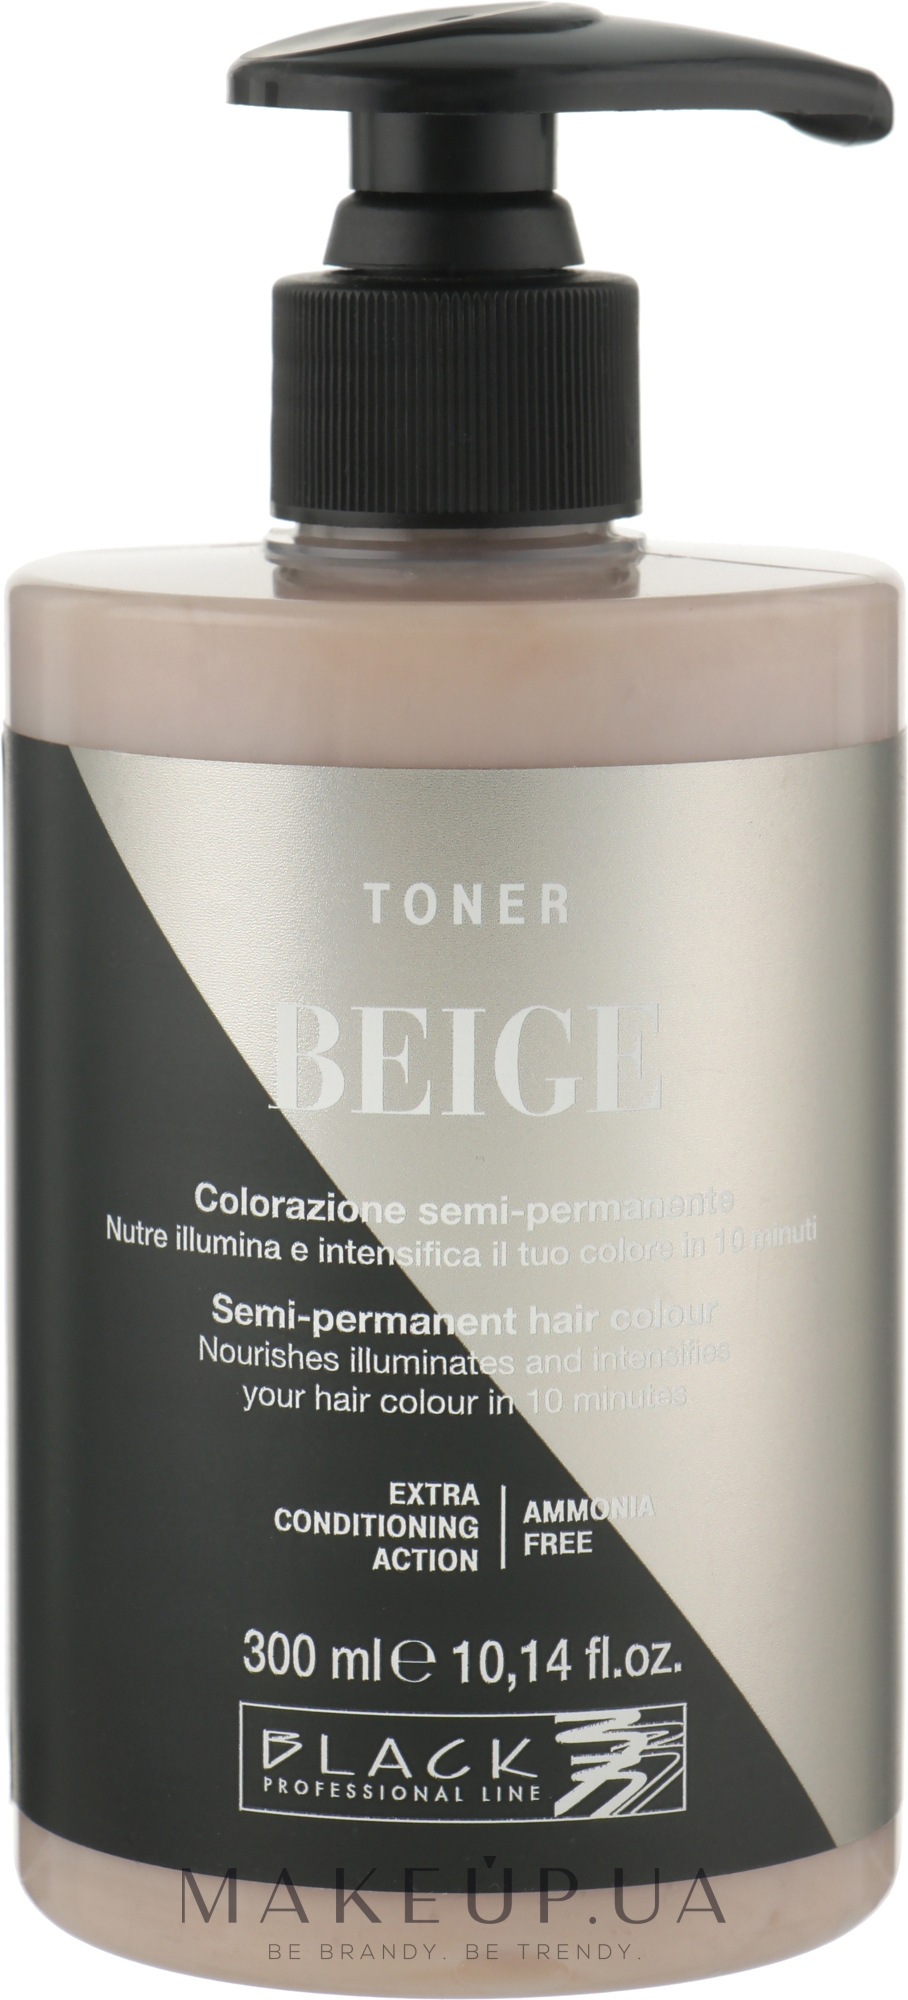 Тонер для волосся - Black Professional Line Semi-Permanent Coloring Toner — фото Beige